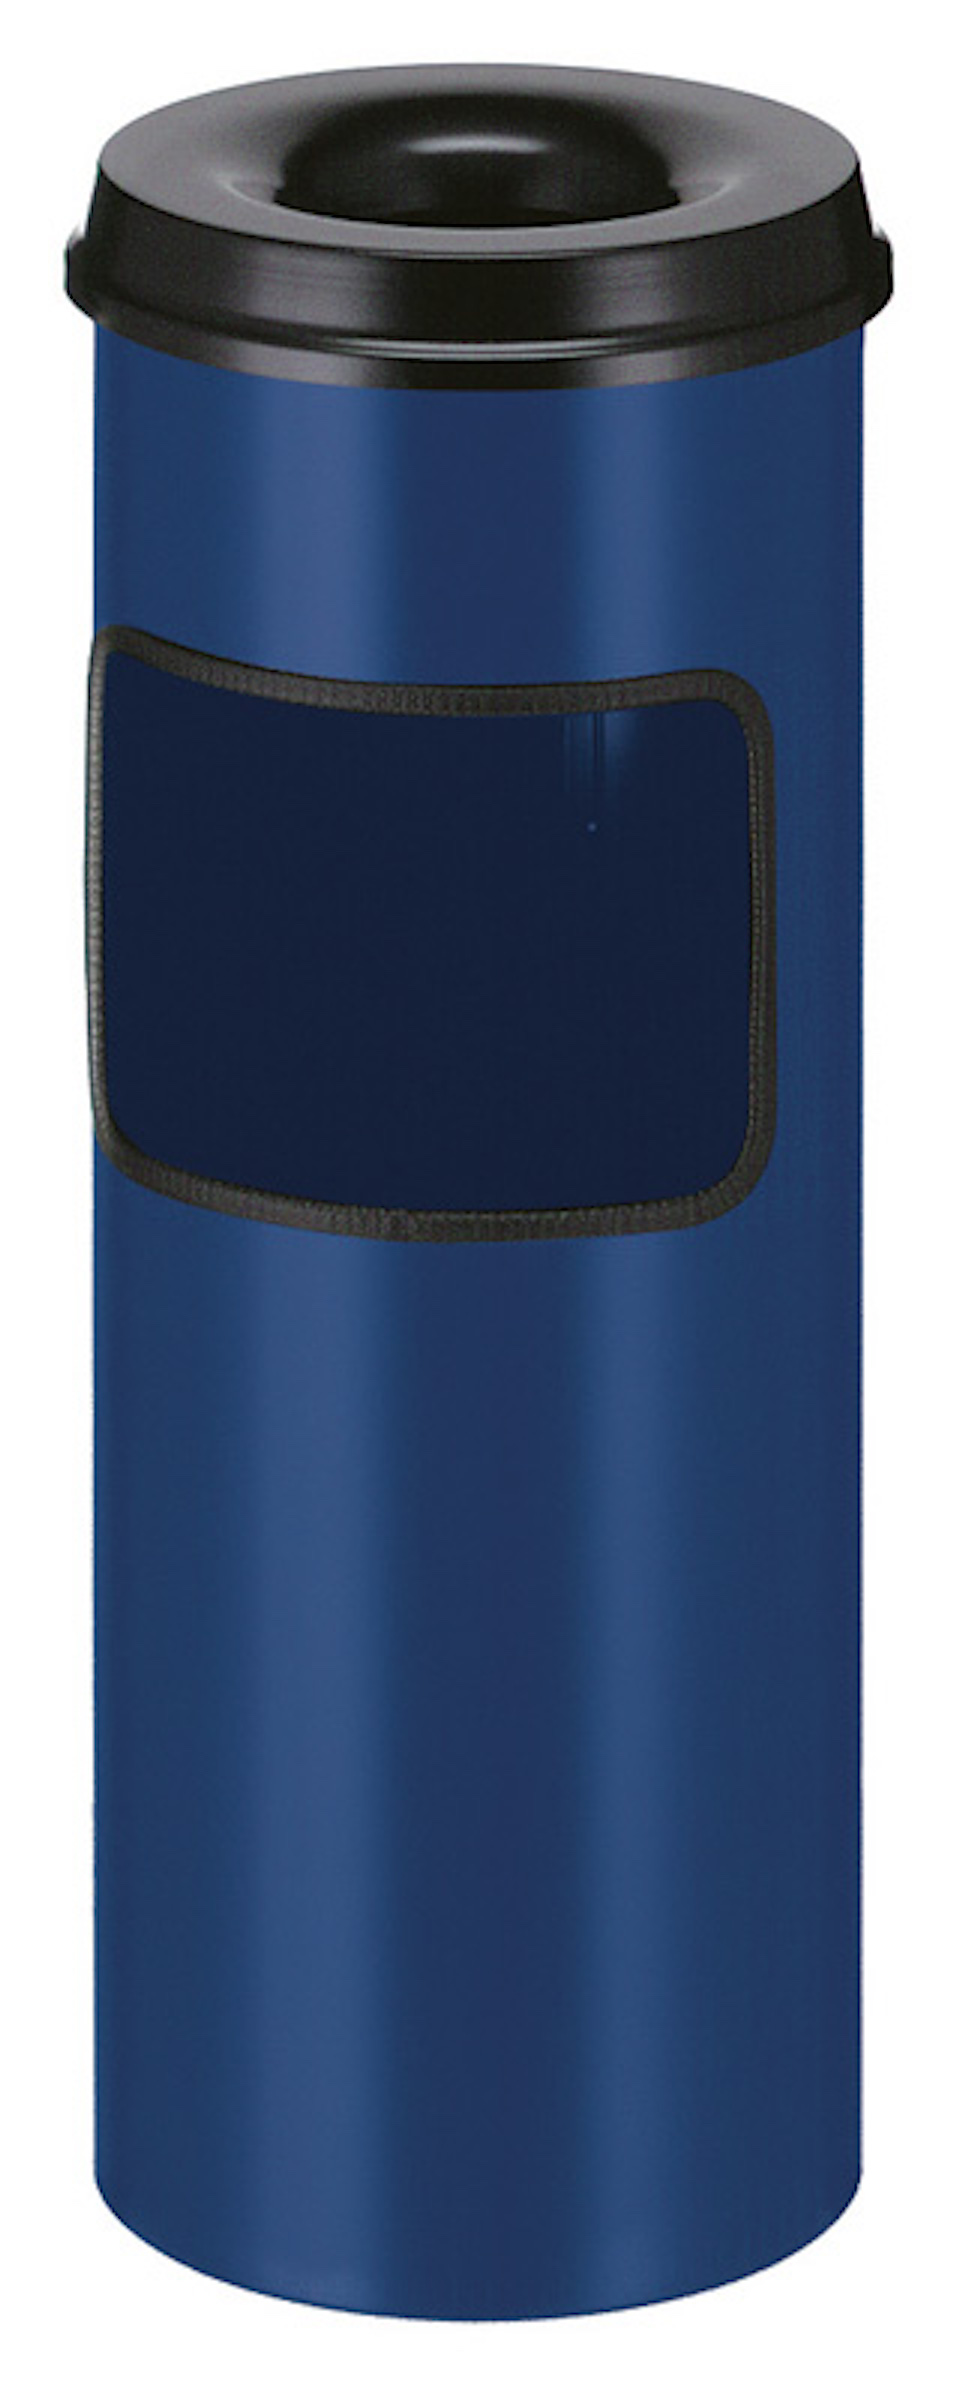 Runder Kombiascher mit feuerlöschendem Oberteil | 30 Liter, HxØ 64,2x24,3cm | Blau, Kopfteil Schwarz